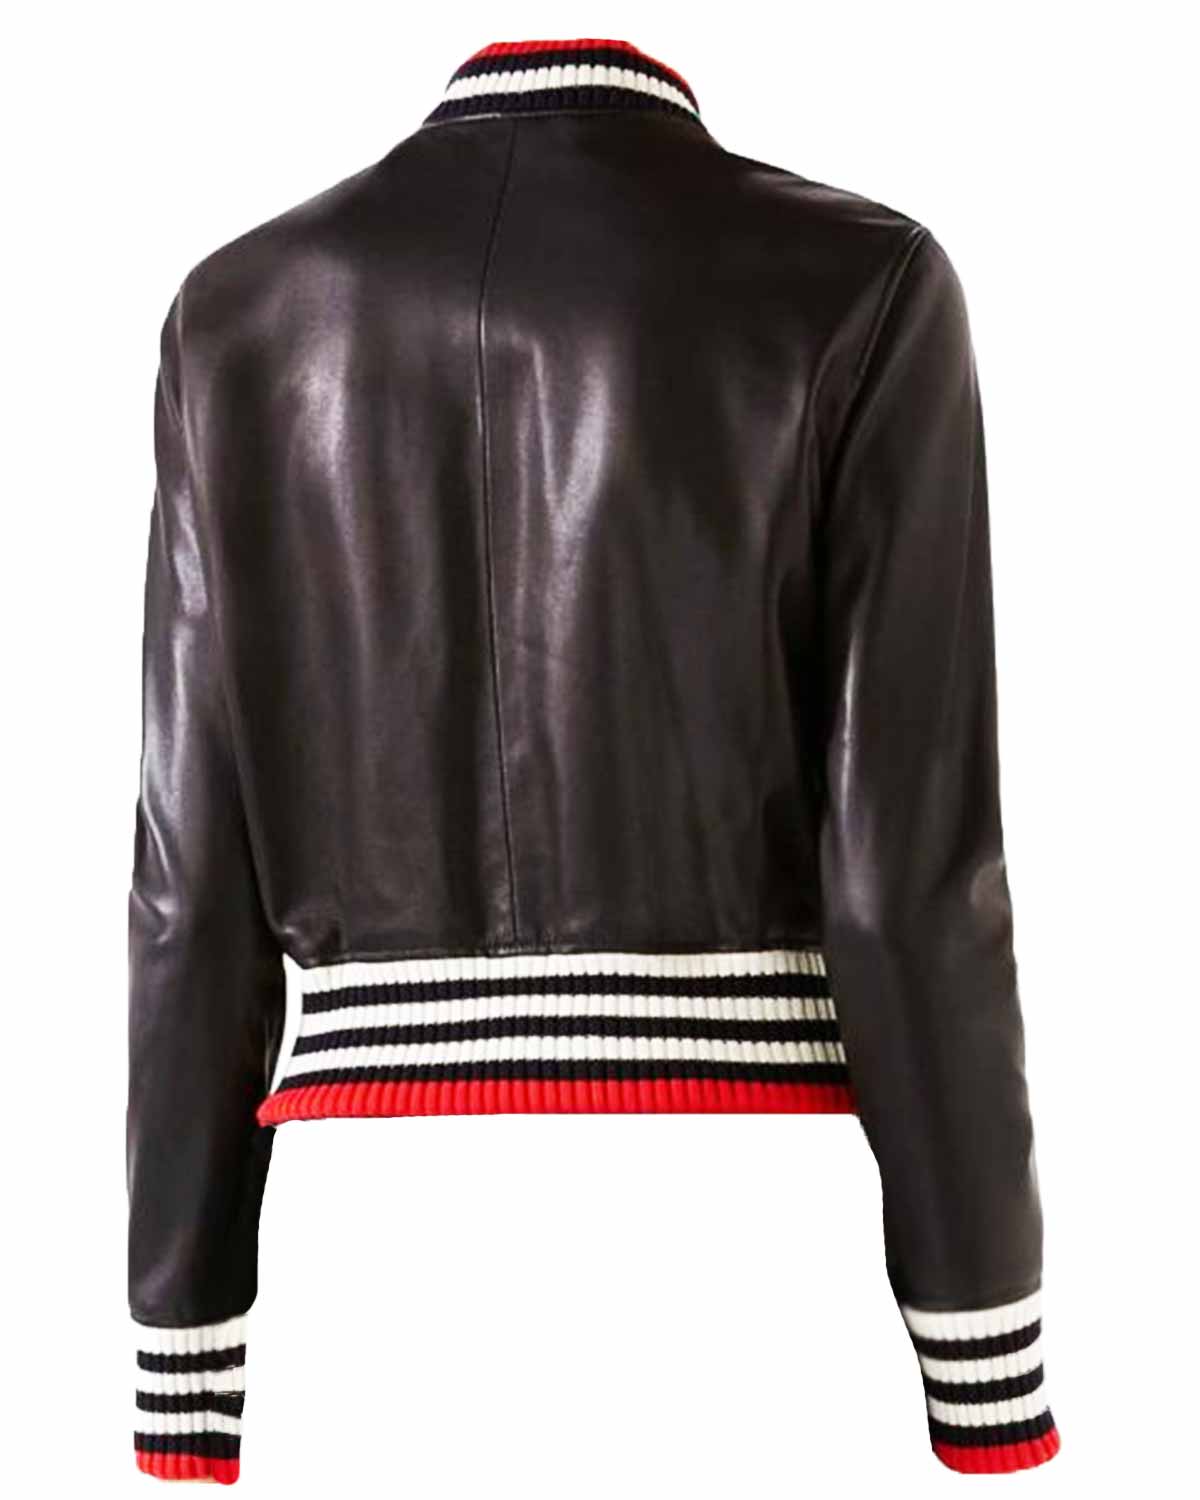 Elite Dorinda Medley Black Leather Jacket